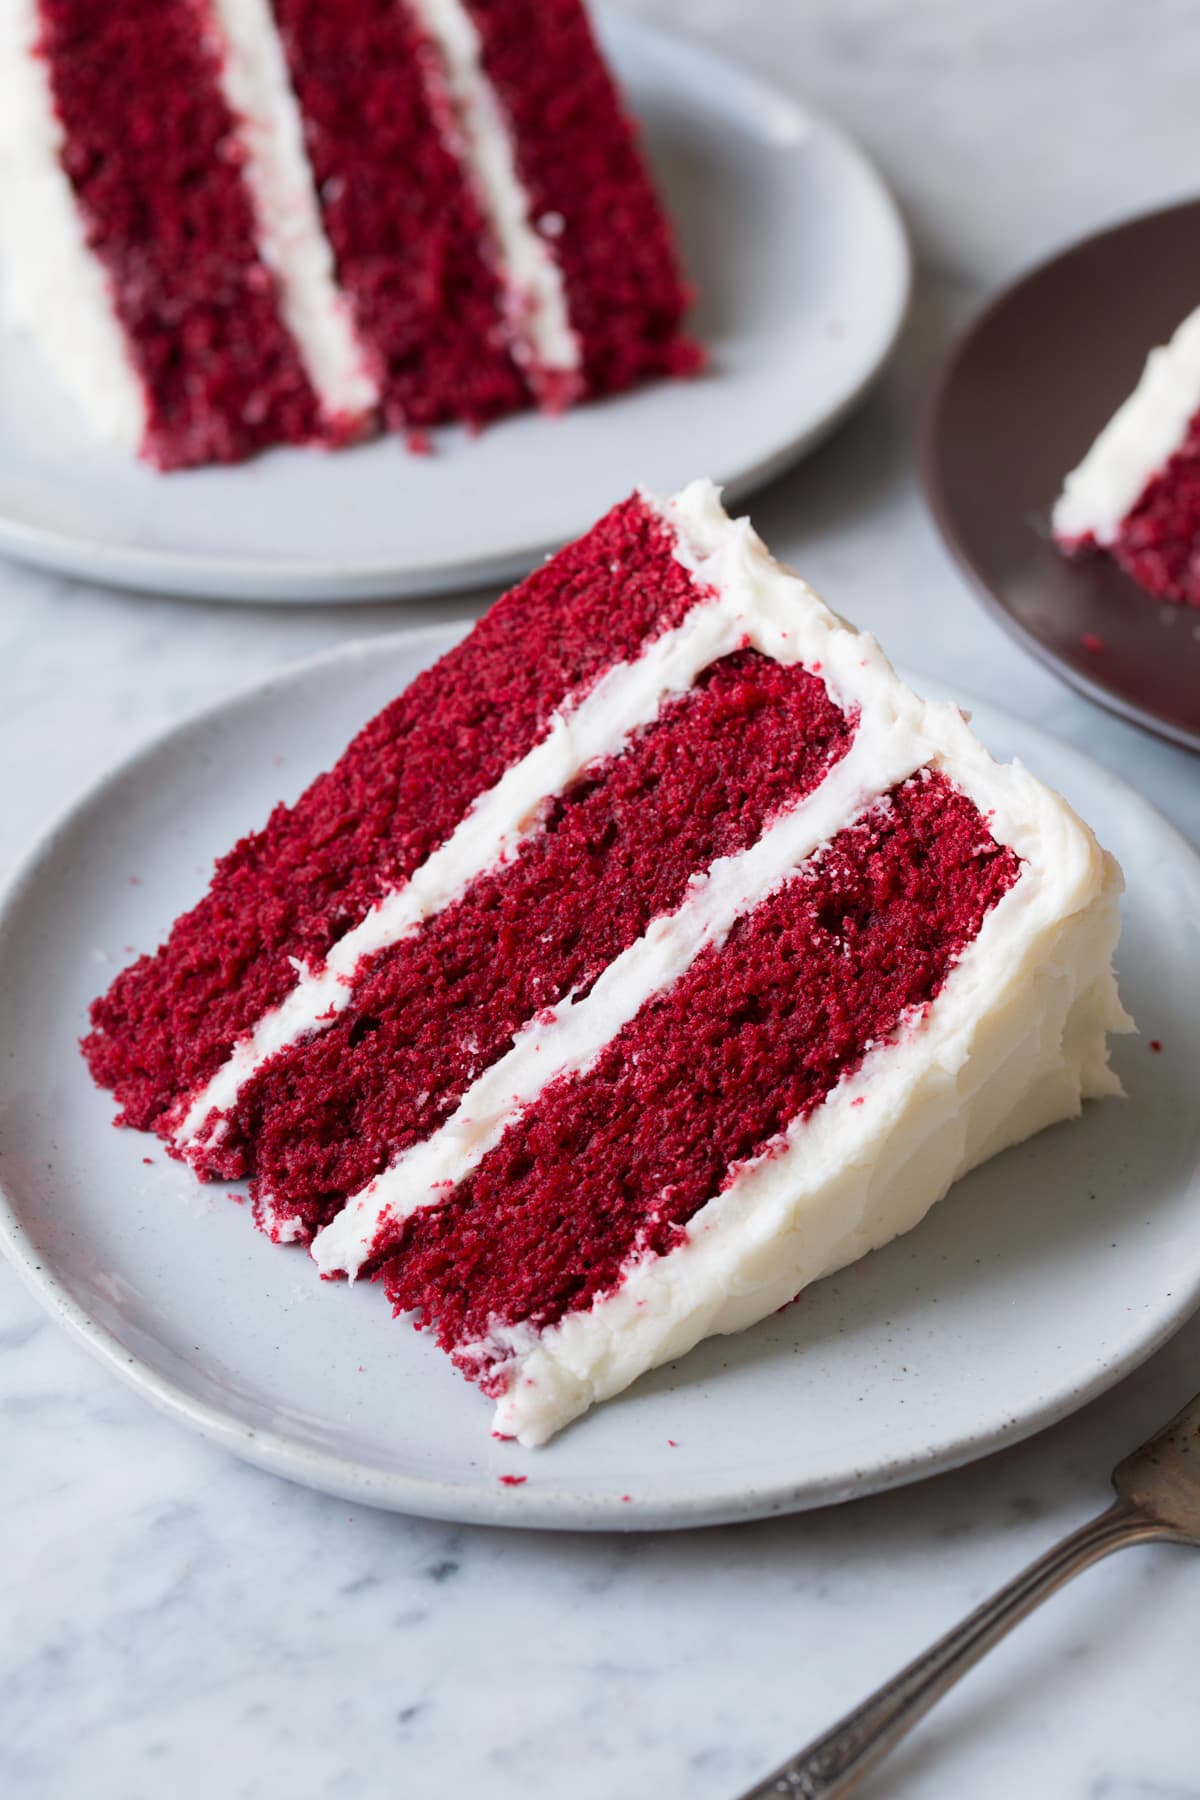 Icing For Red Velvet Cake / Anne Byrn S Red Velvet Cake With Cream ...